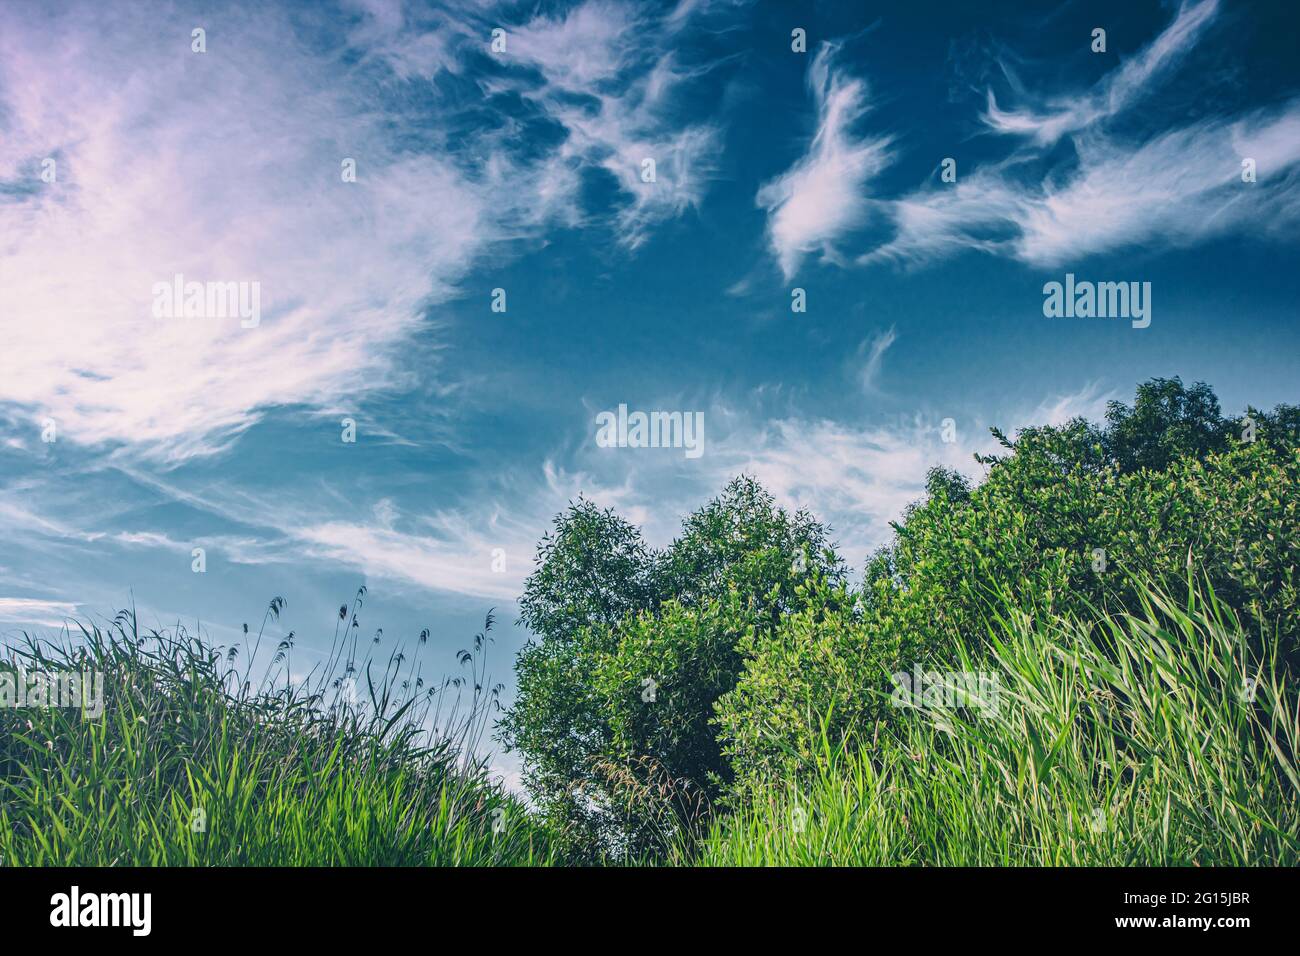 Saftig grünes Gras in Wald und Wiesen bei tollem Sommer Wetter und traumgaften, blauen Himmel. Schilfrohr Aufnahme am Wasser mit schönem Wolkenband Stock Photo